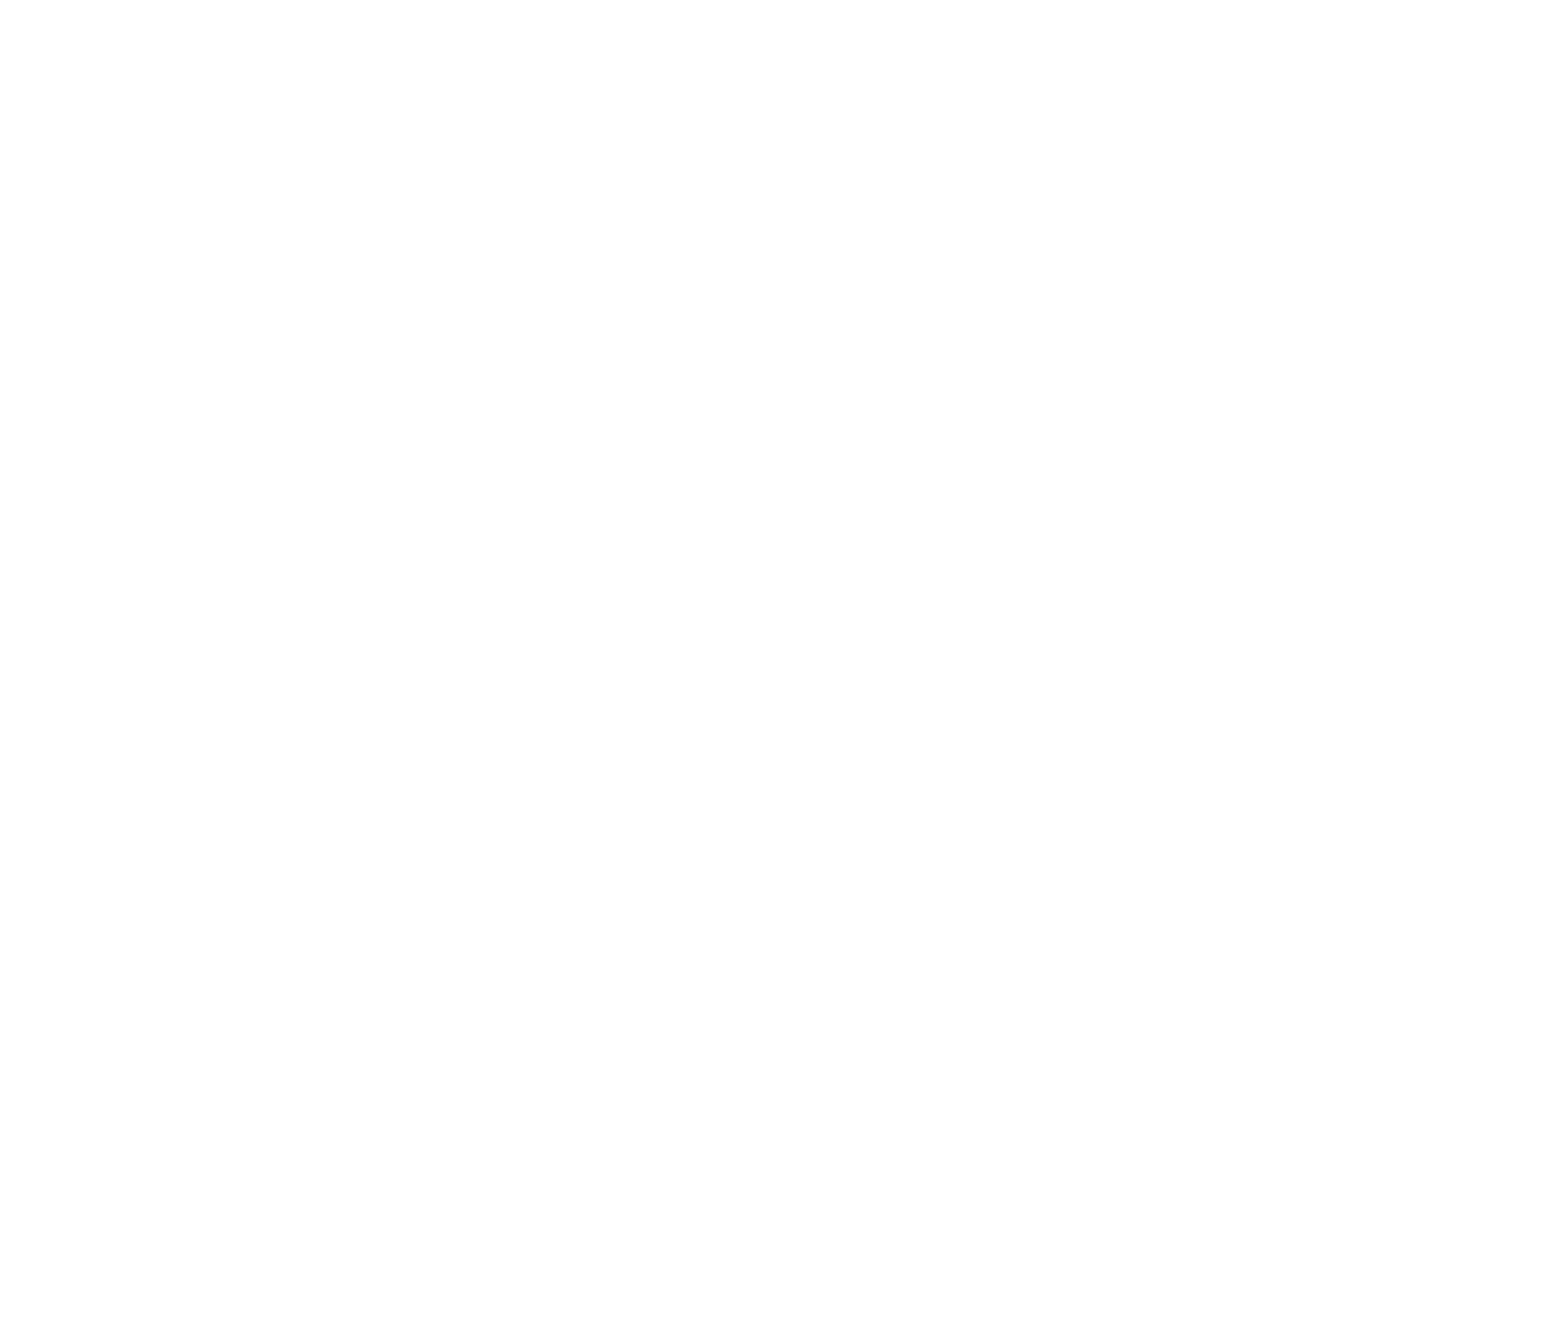 Forgame logo for dark backgrounds (transparent PNG)